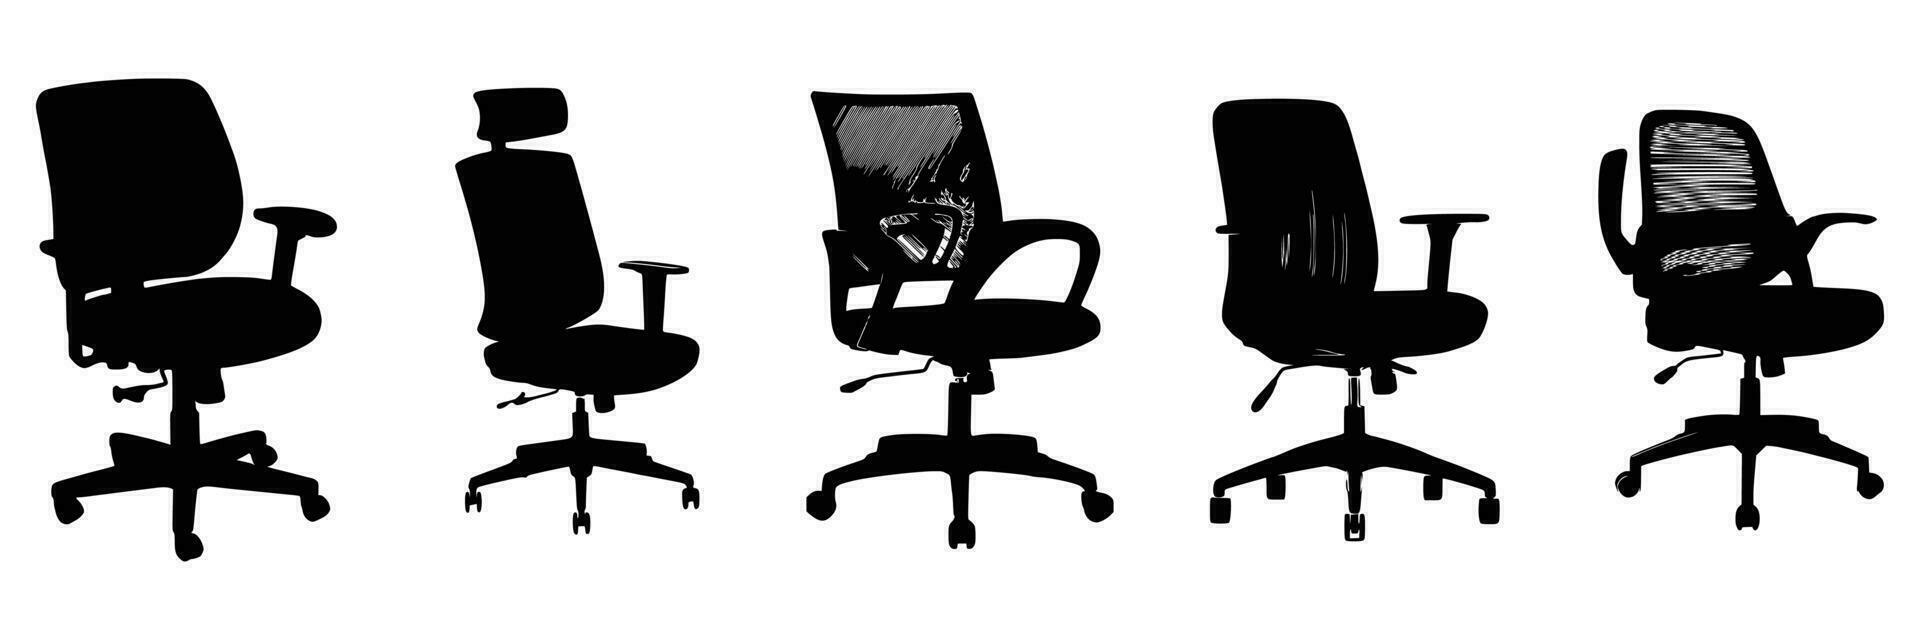 cinco oficina sillas siluetas vector diseño.